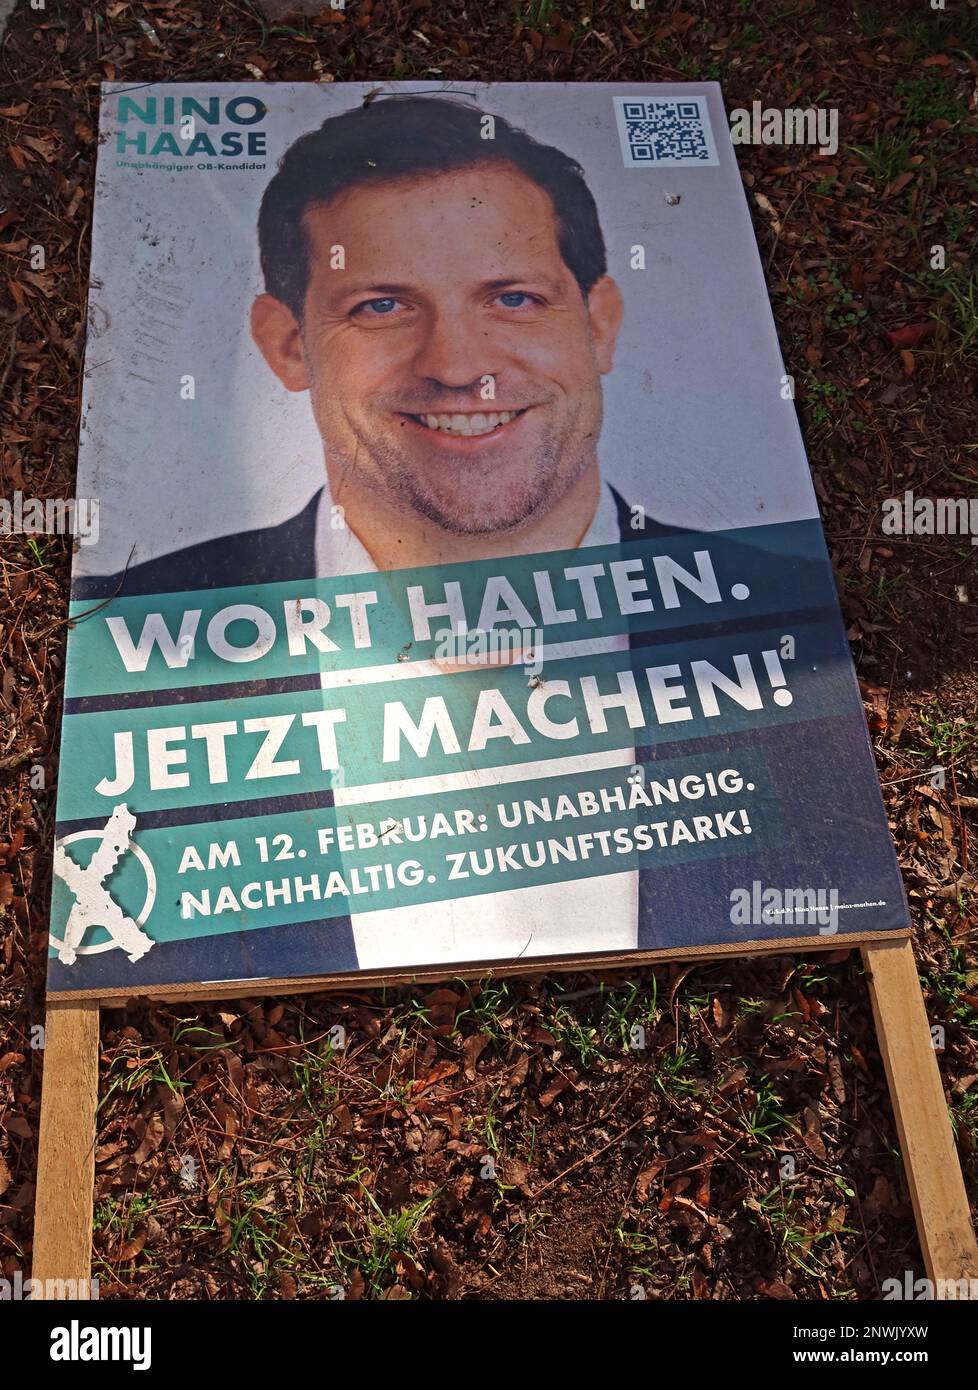 Affiche de campagne pour non-parti Nino Haase, 2023 février OB-Kandidat fur Mainz, Unabhangiger, Mainz-Machen.de, Rhénanie-Palatinat Banque D'Images